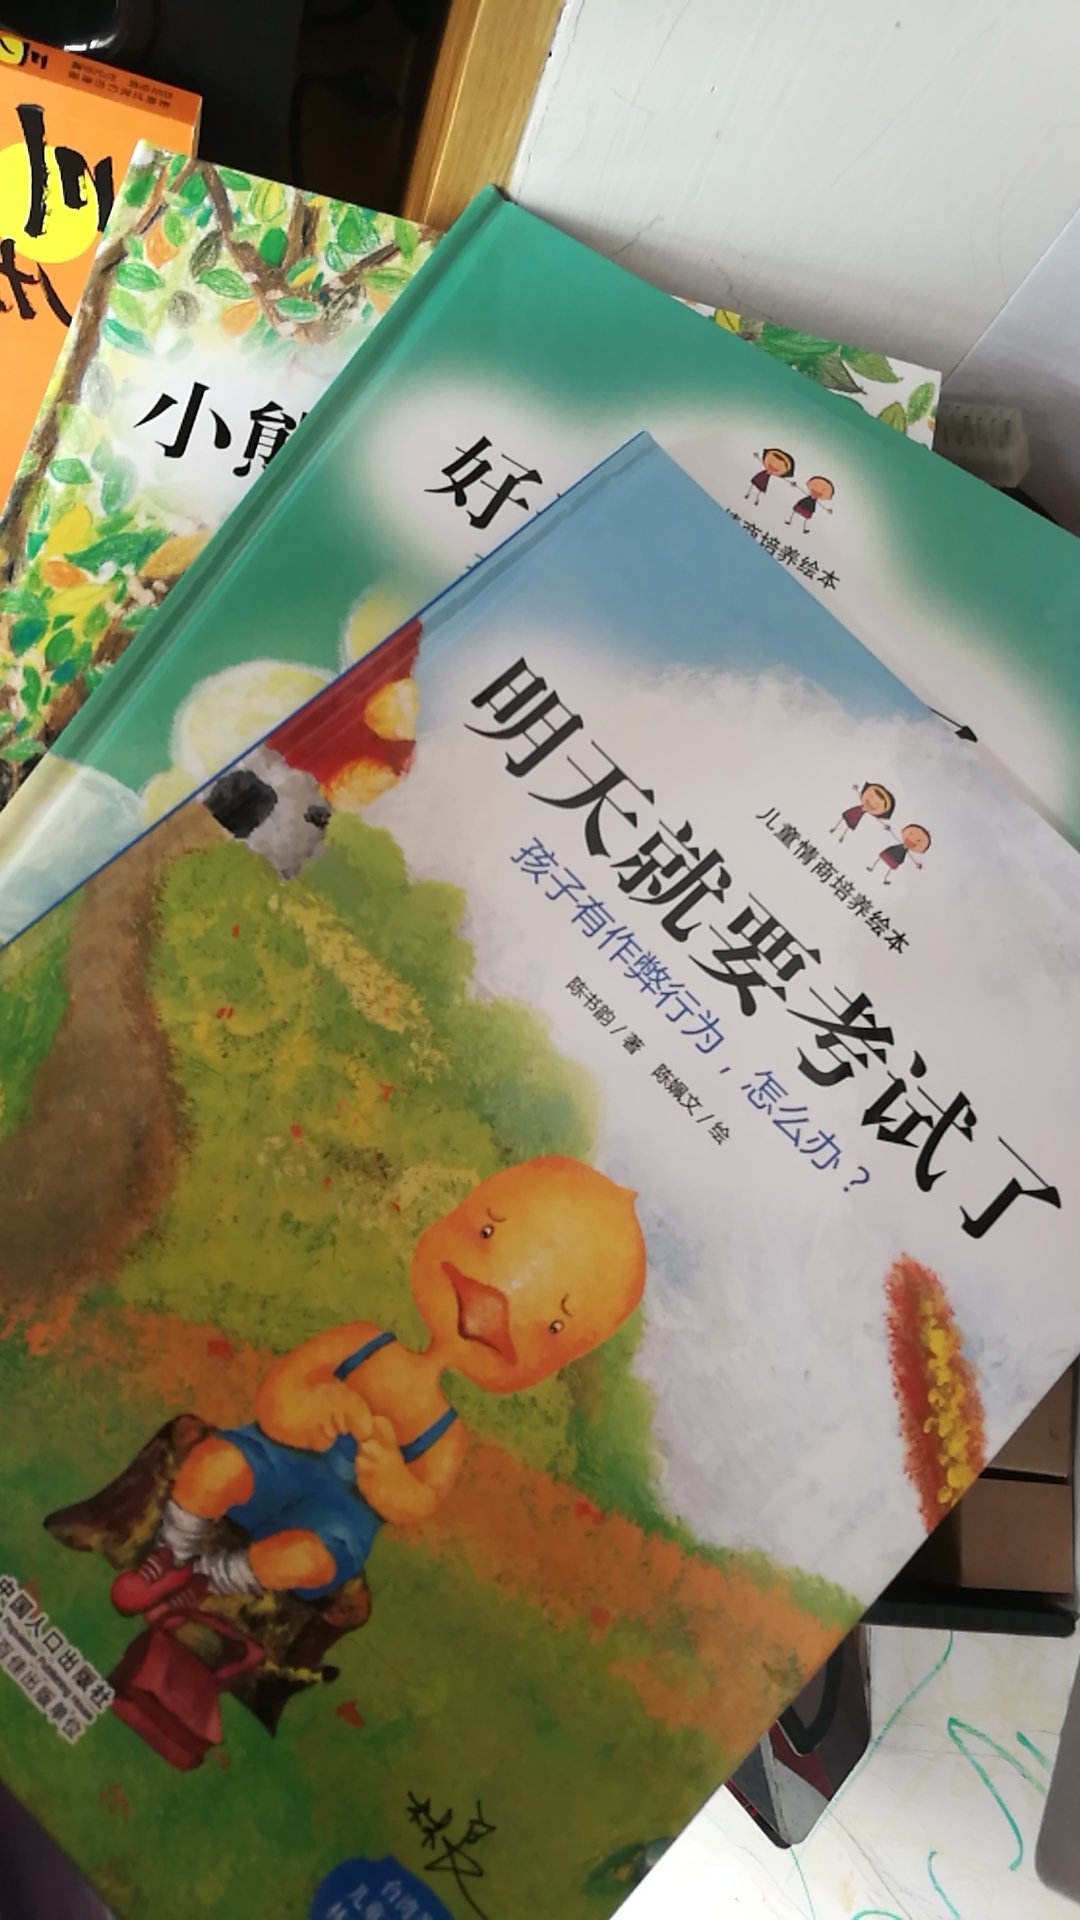 已经读了，绘画很好，字较少，比较适合幼儿园中班以上的孩子开始接触汉字的学习是用